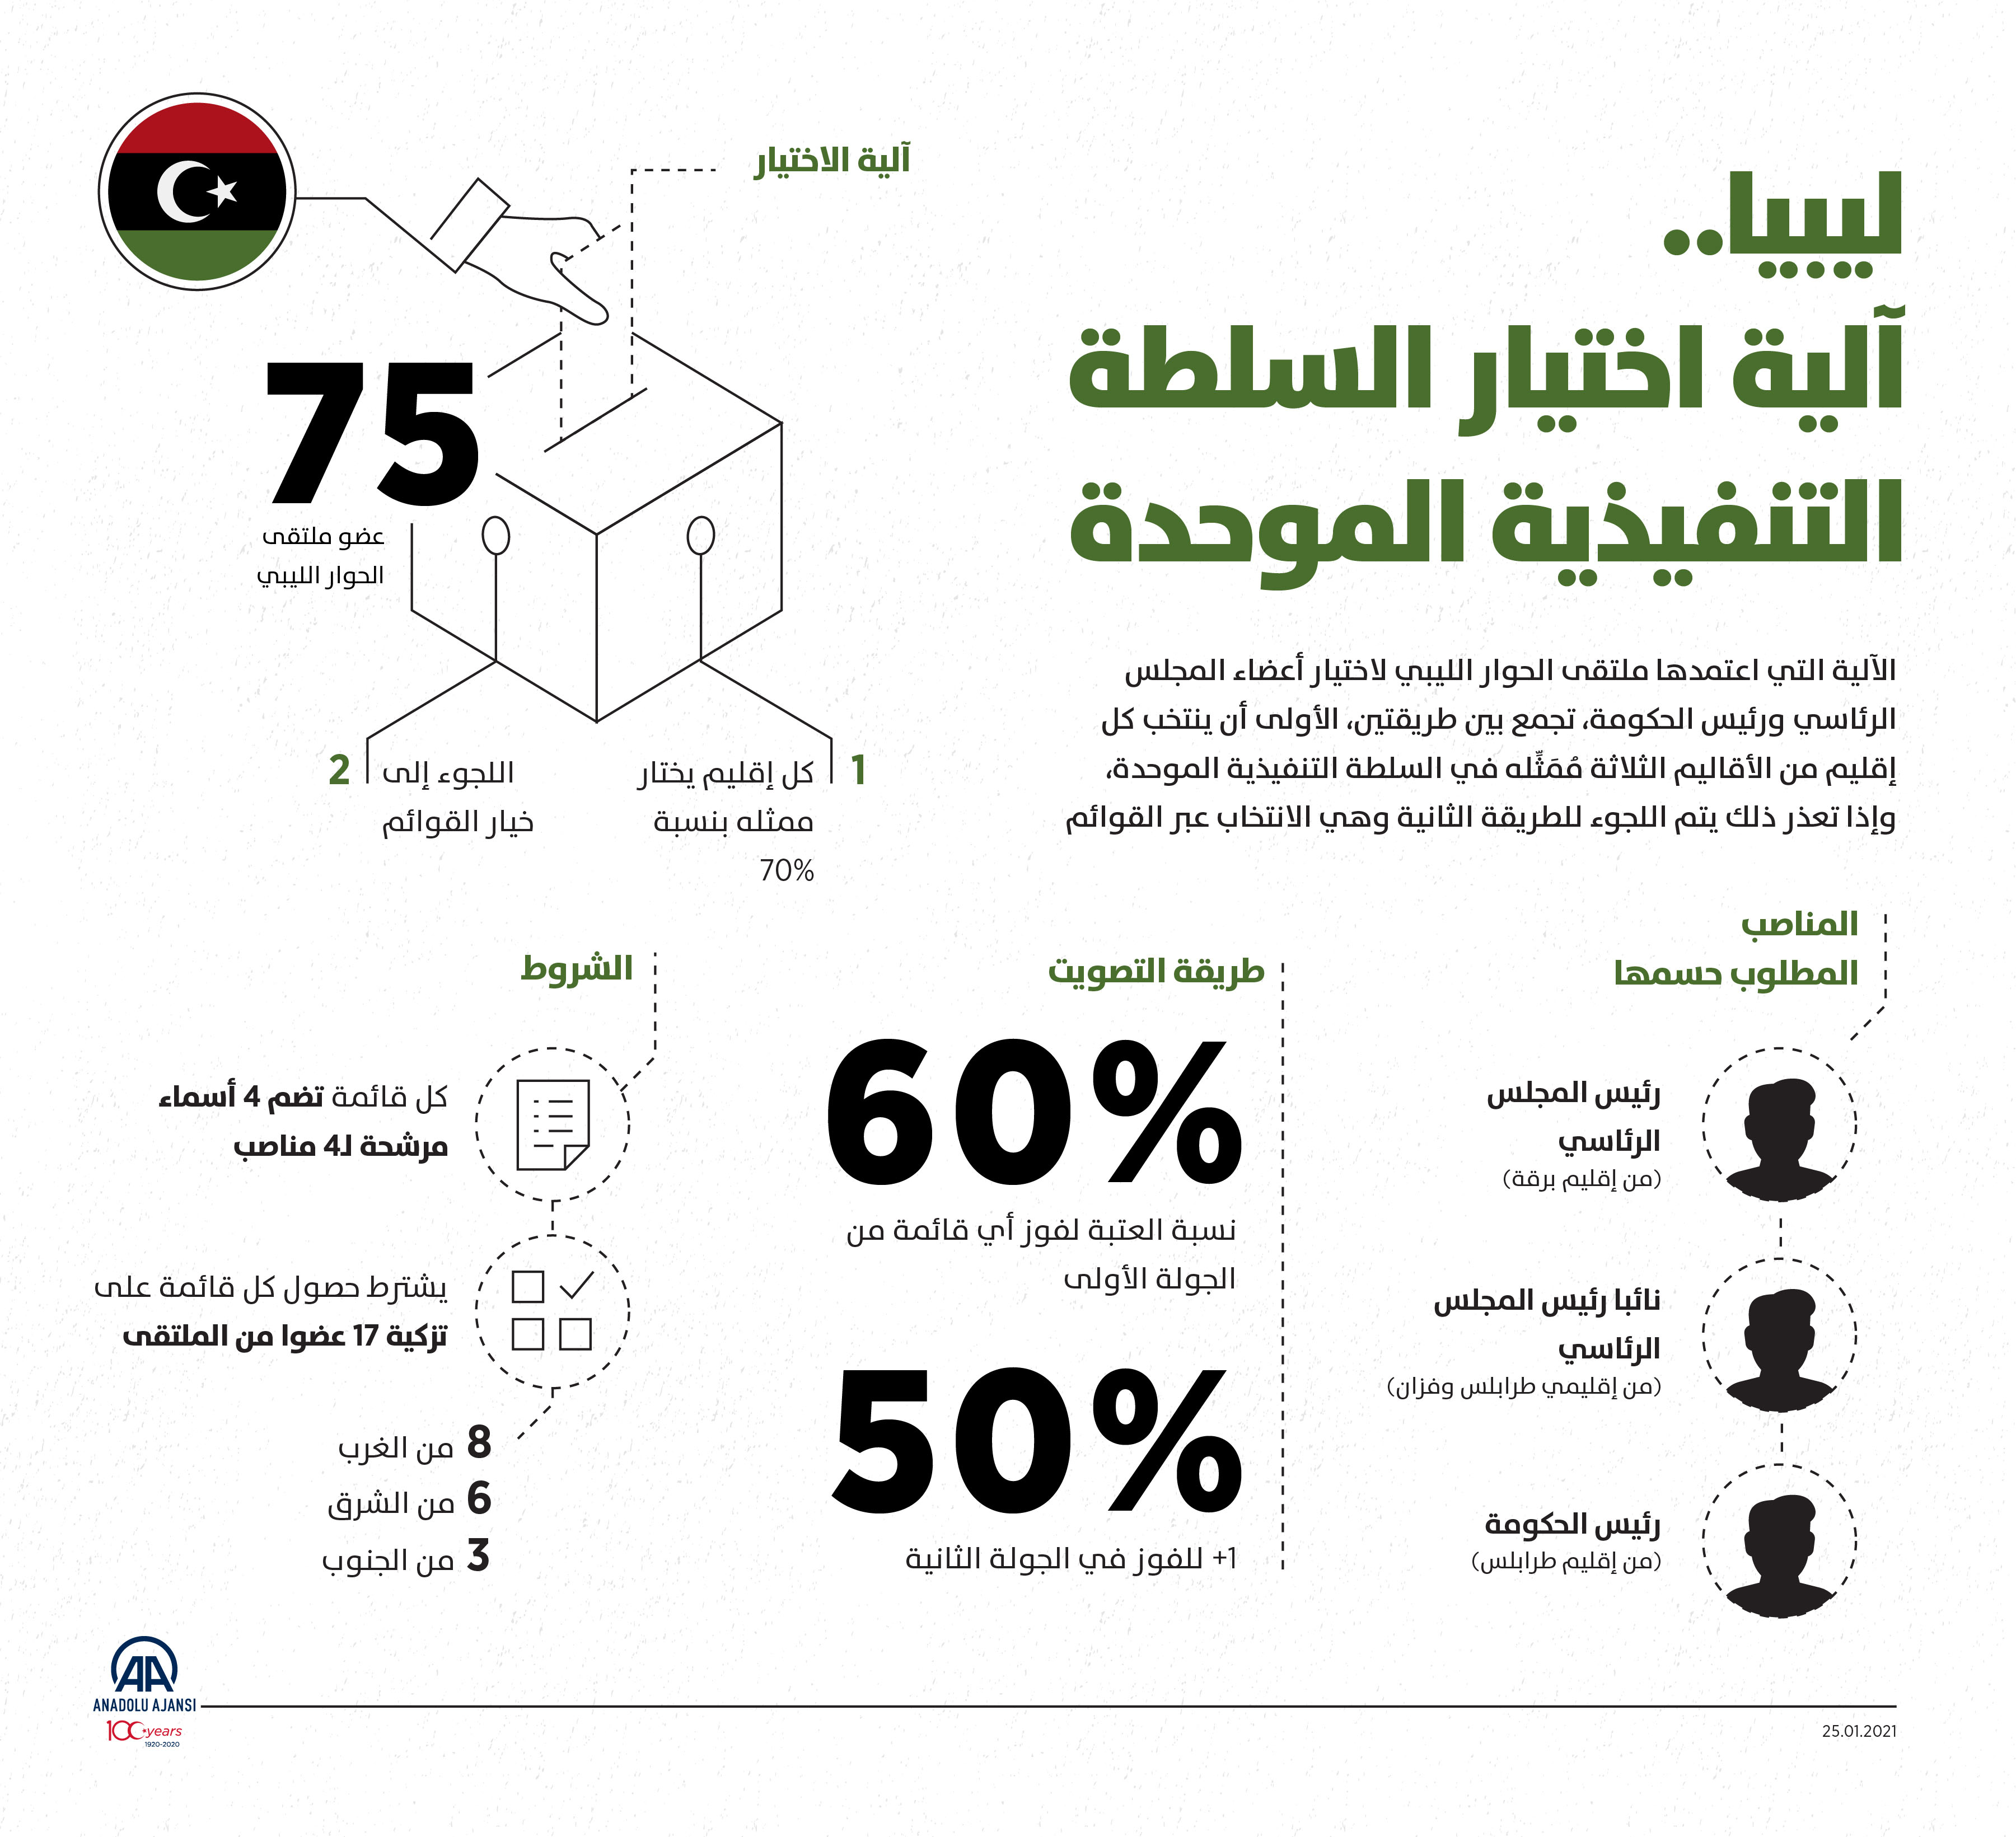 ليبيا.. آلية اختيار السلطة التنفيذية الموحدة